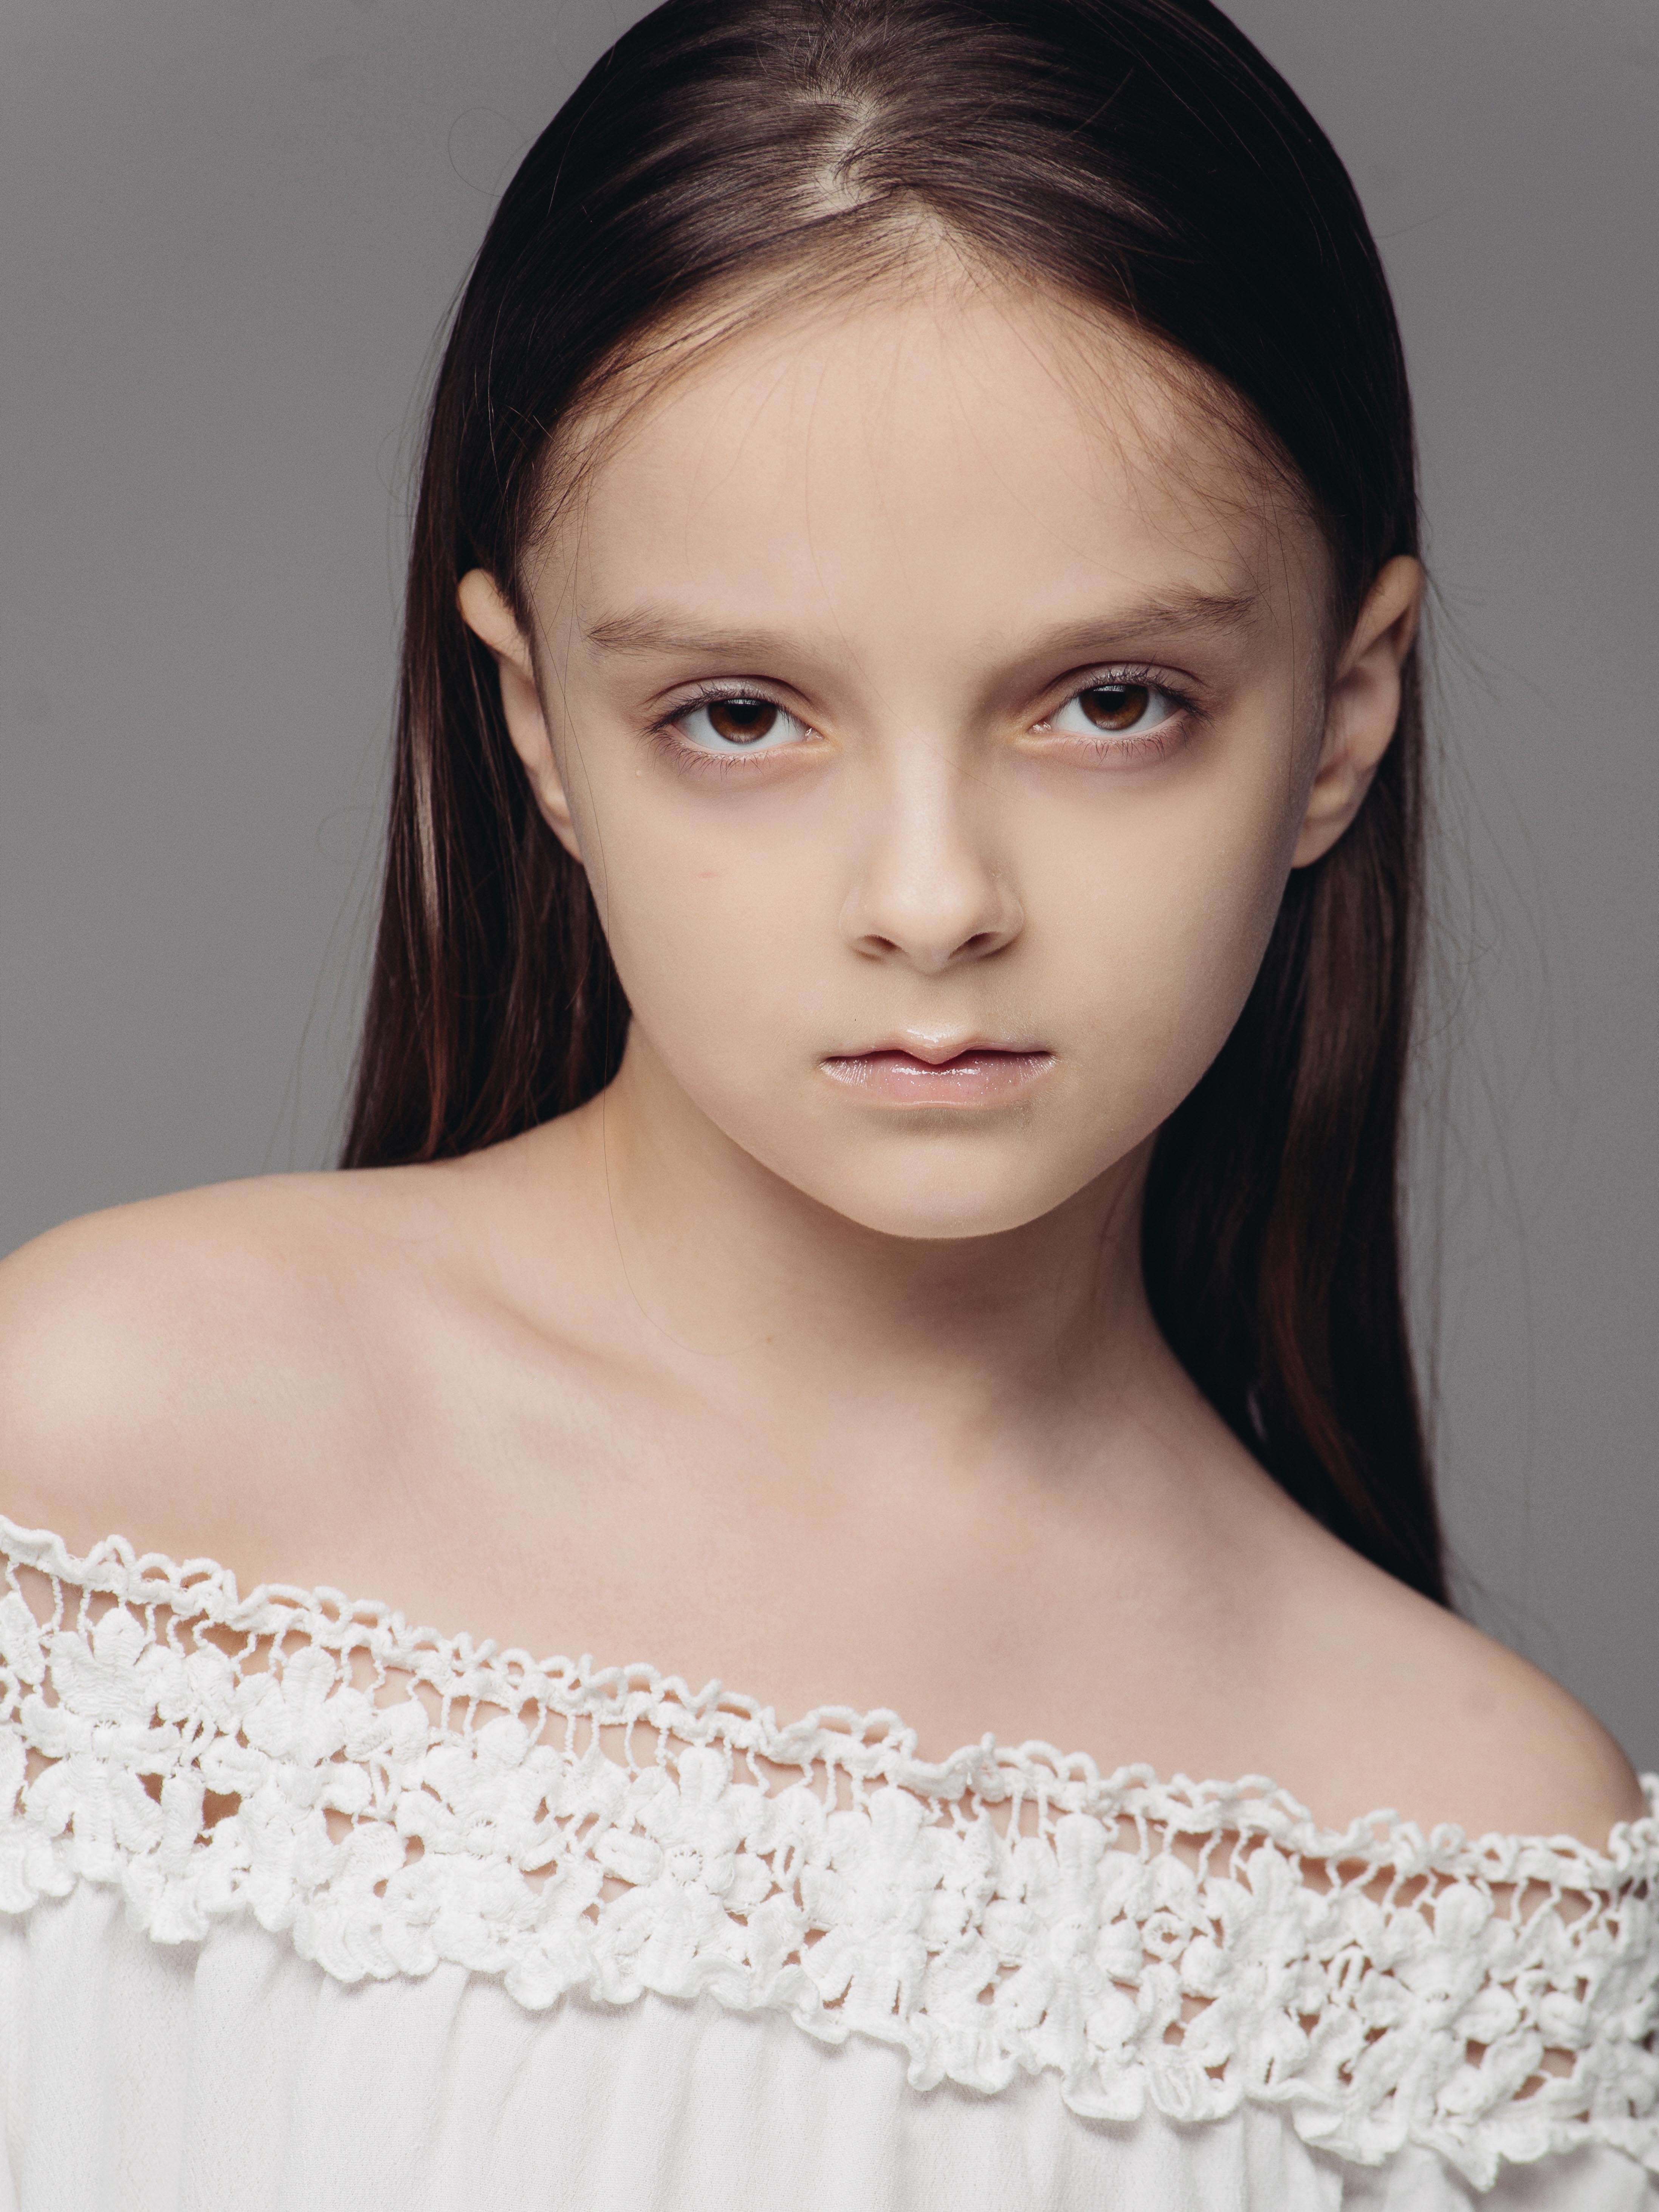 Александра Ковалева - аккредитованная модель для участия в подиумных показах на Междунродной Детской Неделе моды